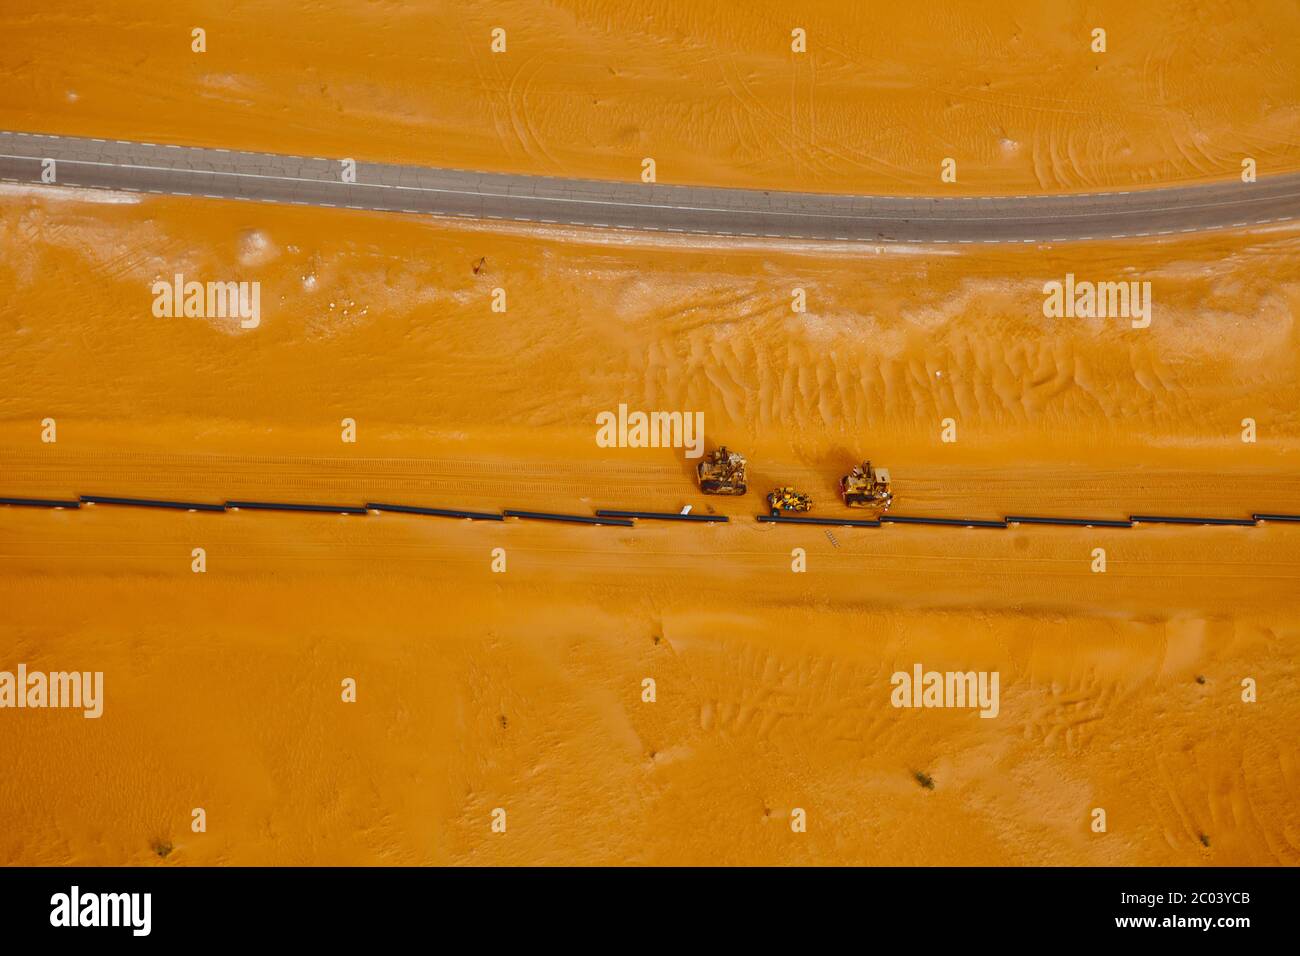 Bull bulldozers aplatissement du sable pour la construction d'une route de gypse afin de faciliter le soudage d'un pipeline d'exportation de pétrole dans le désert du Sahara. Banque D'Images